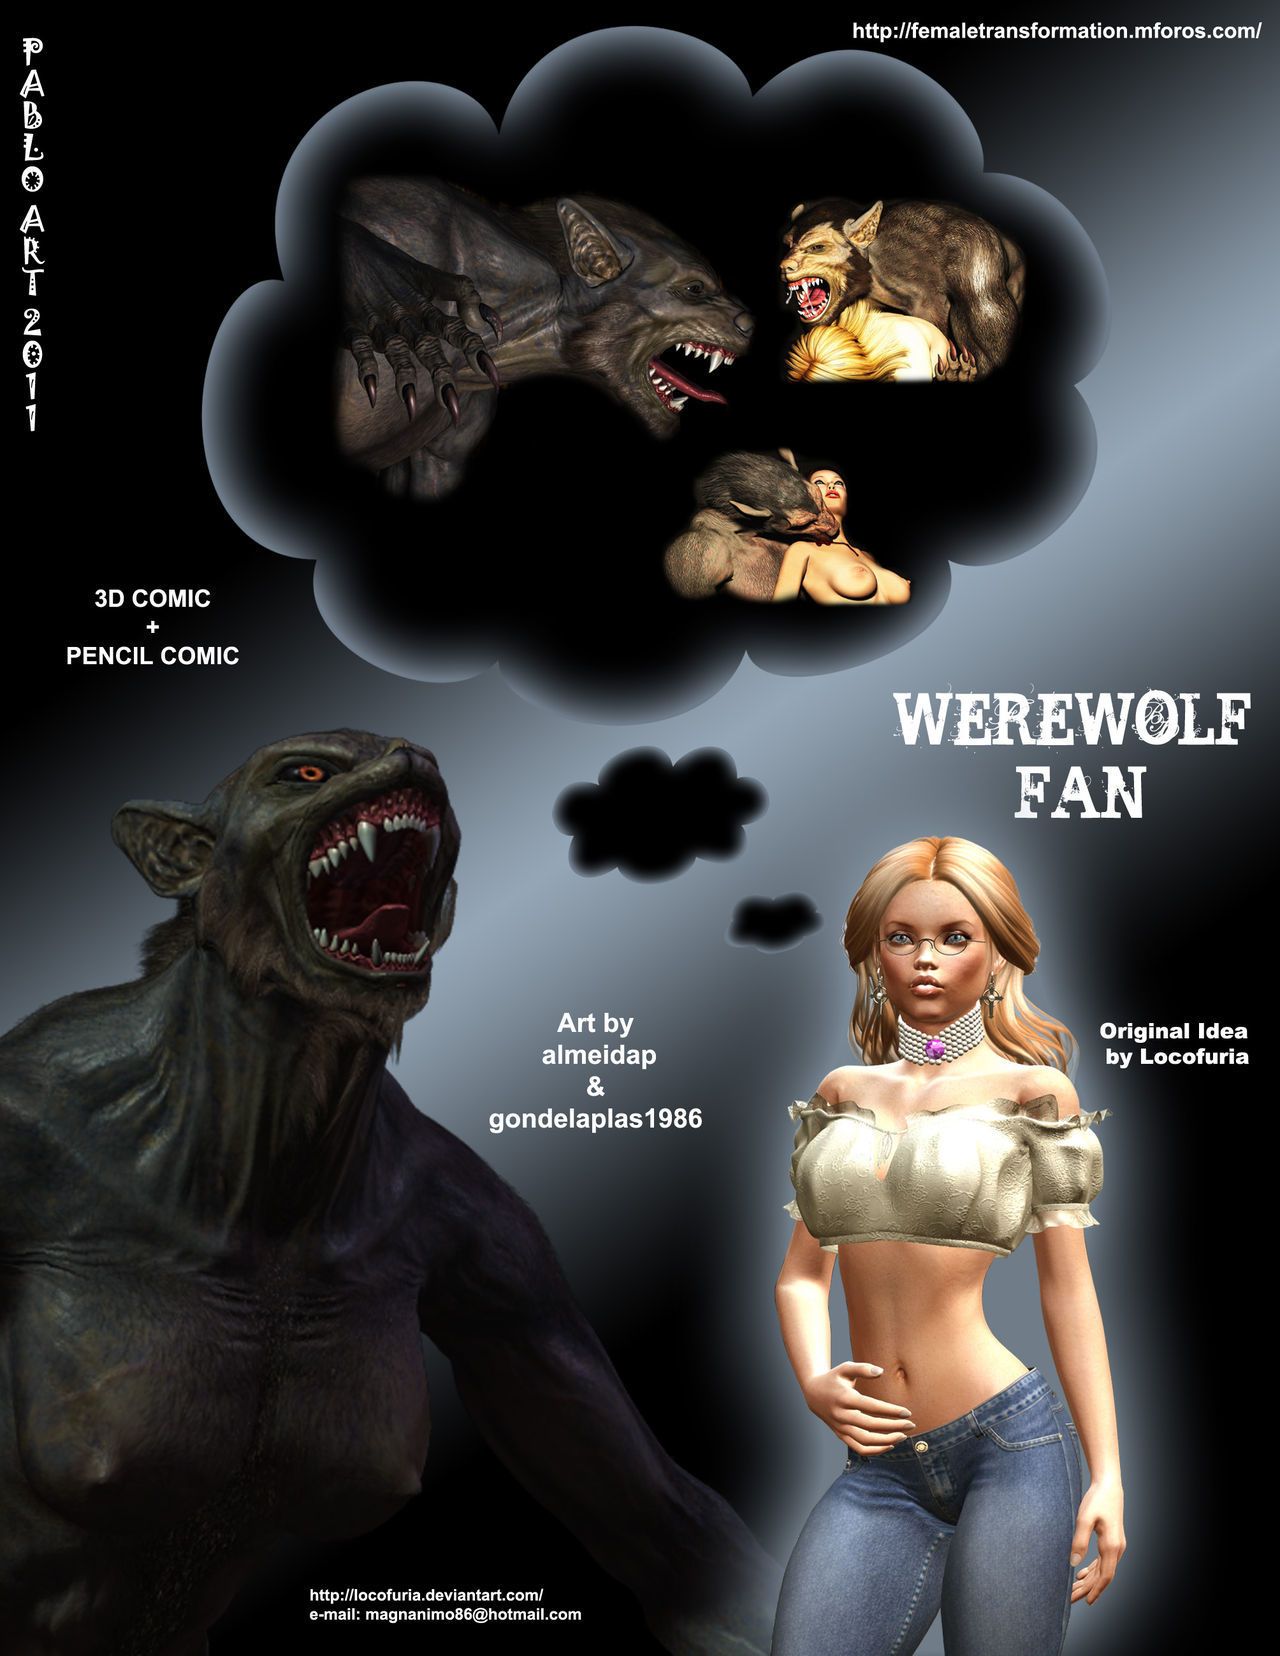 weerwolf fan